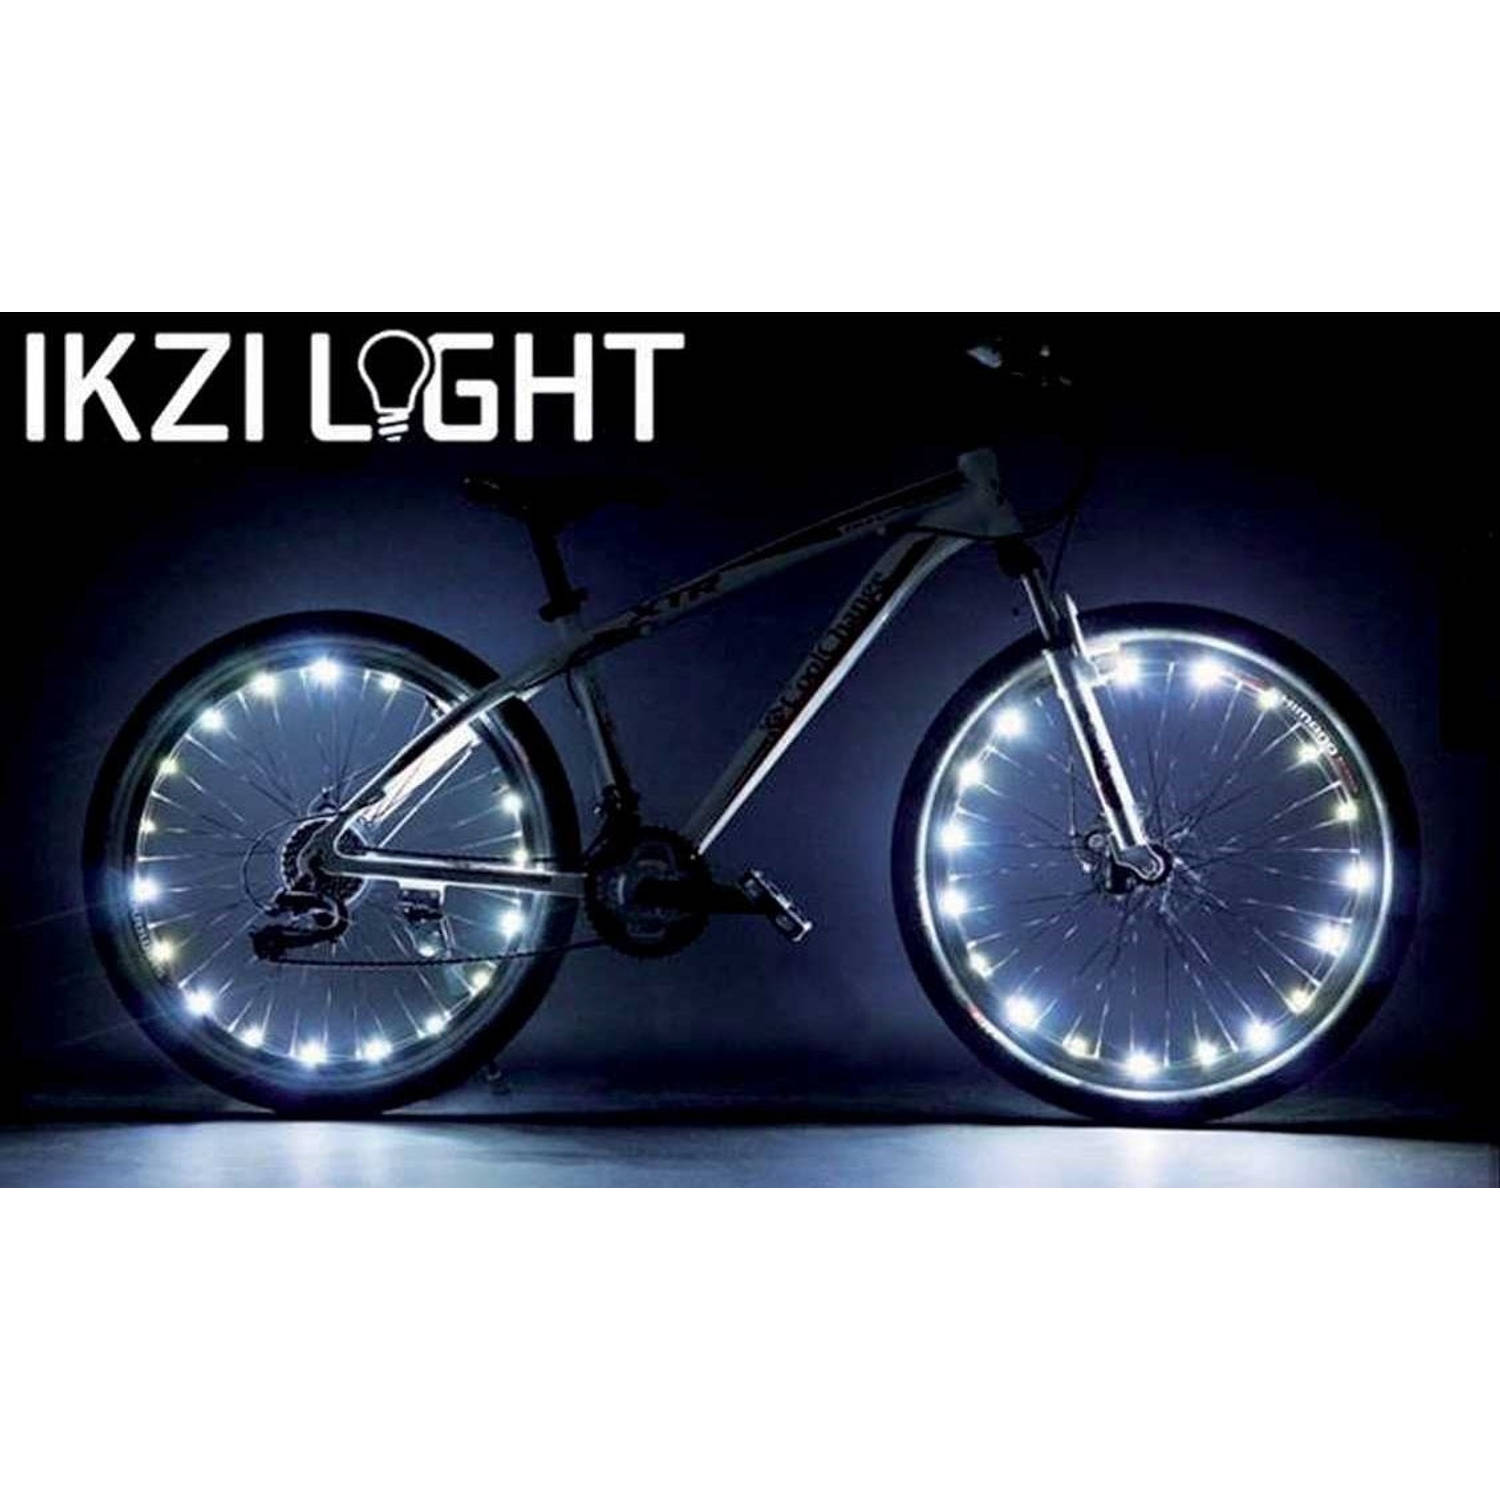 IKZI Wielverlichting voor 2 wielen blauwe leds